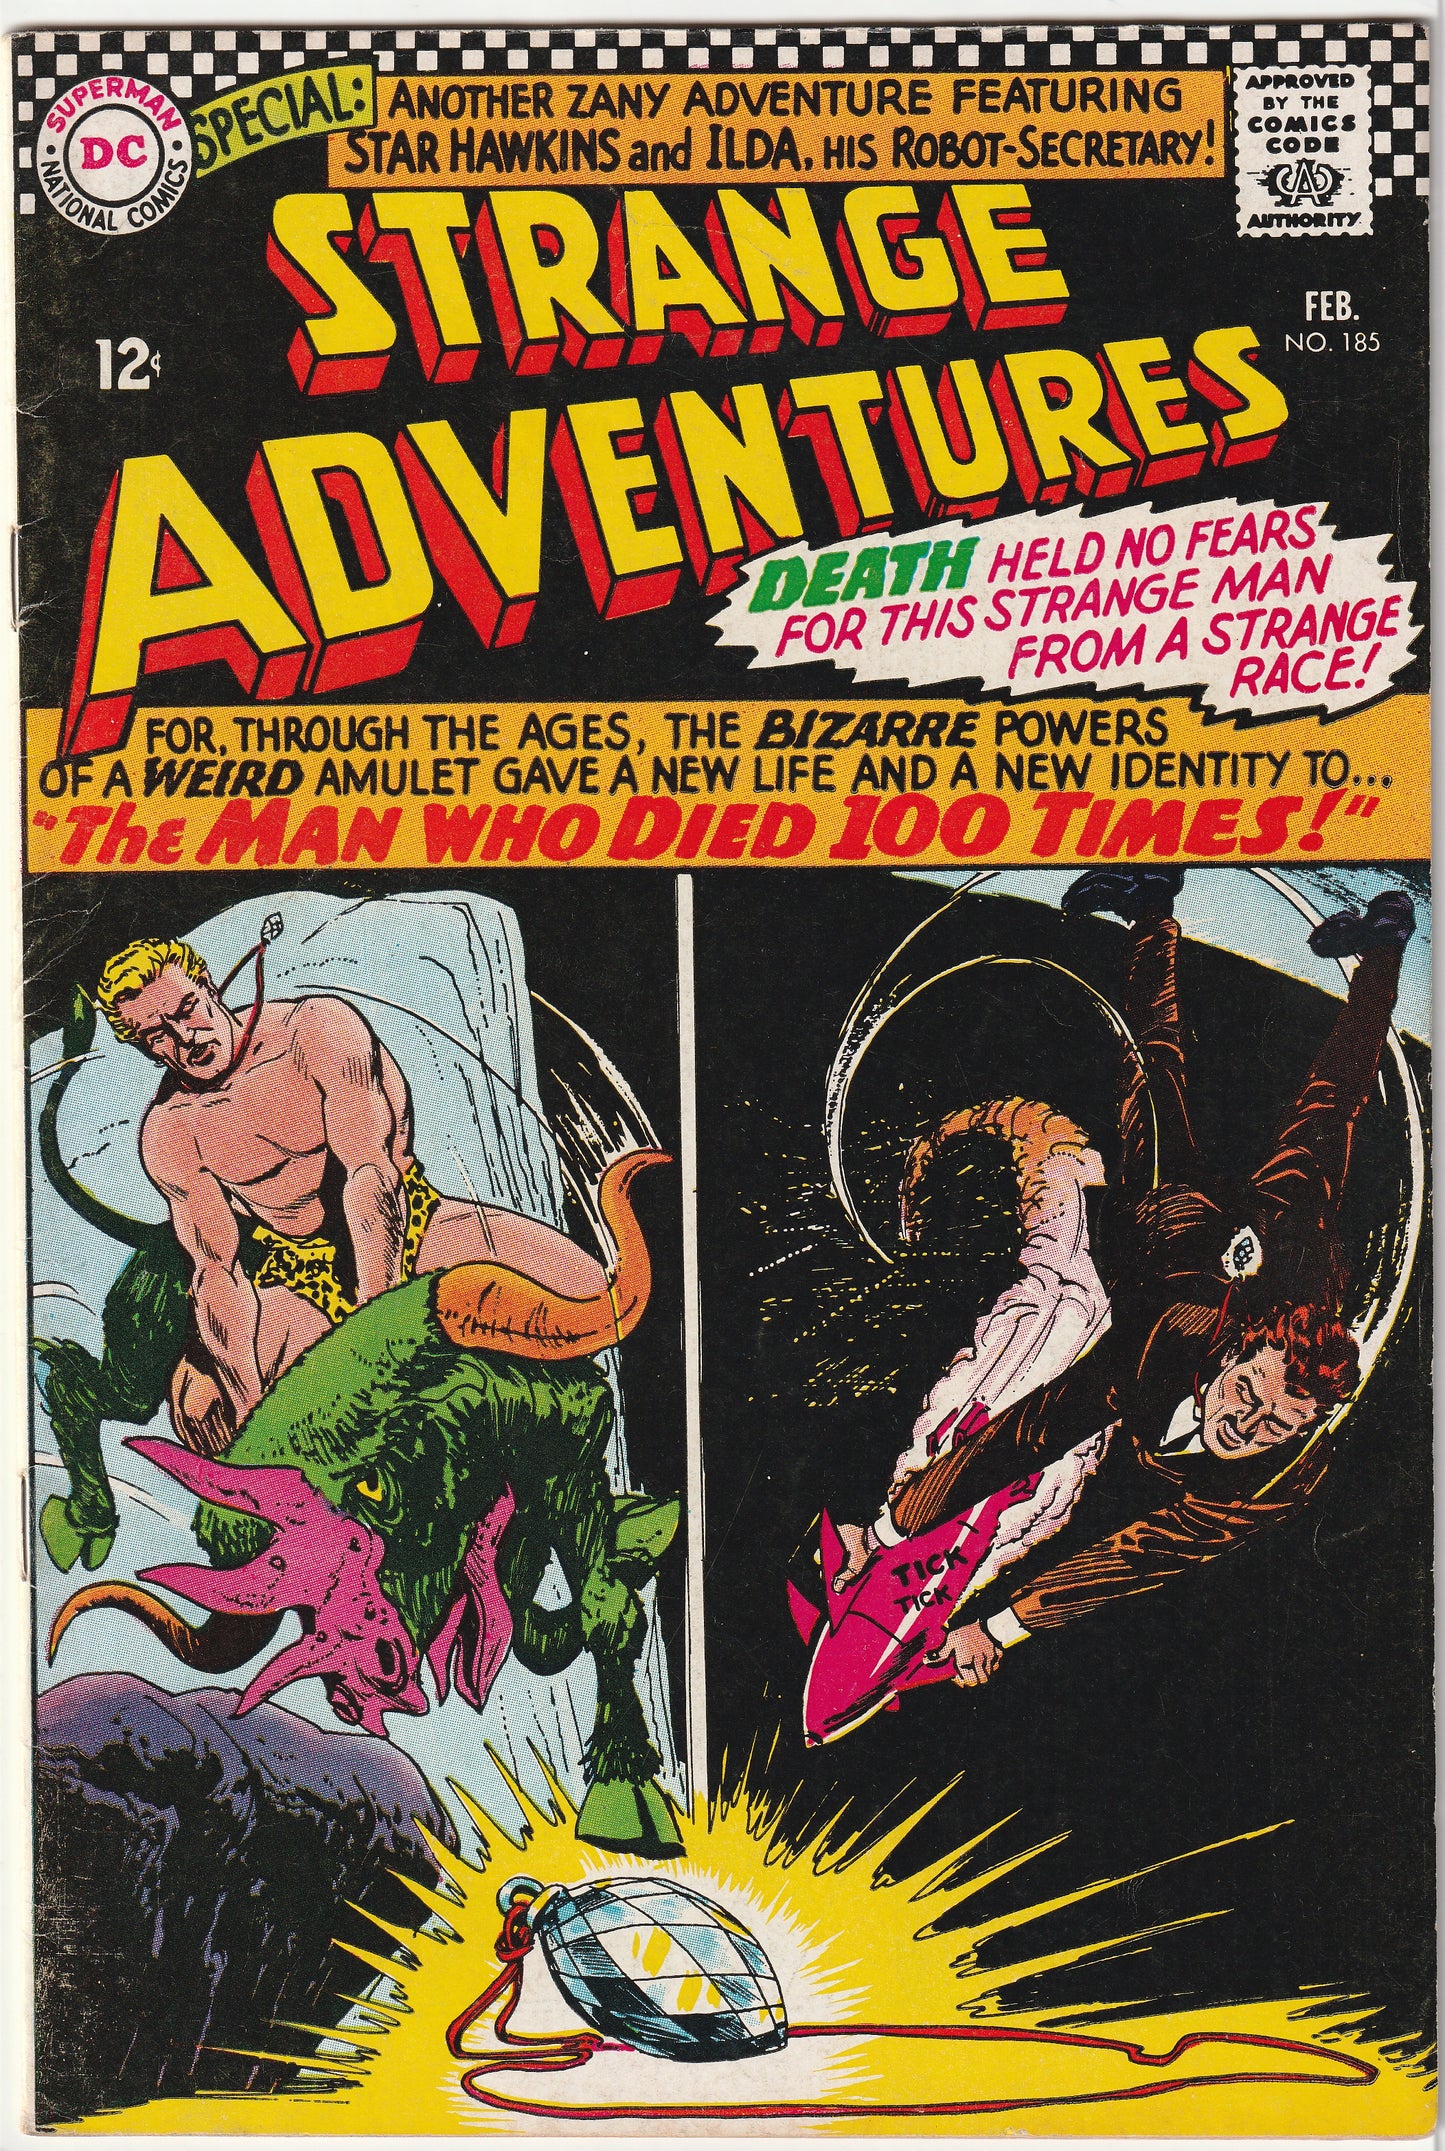 Strange Adventures #185 (1966)